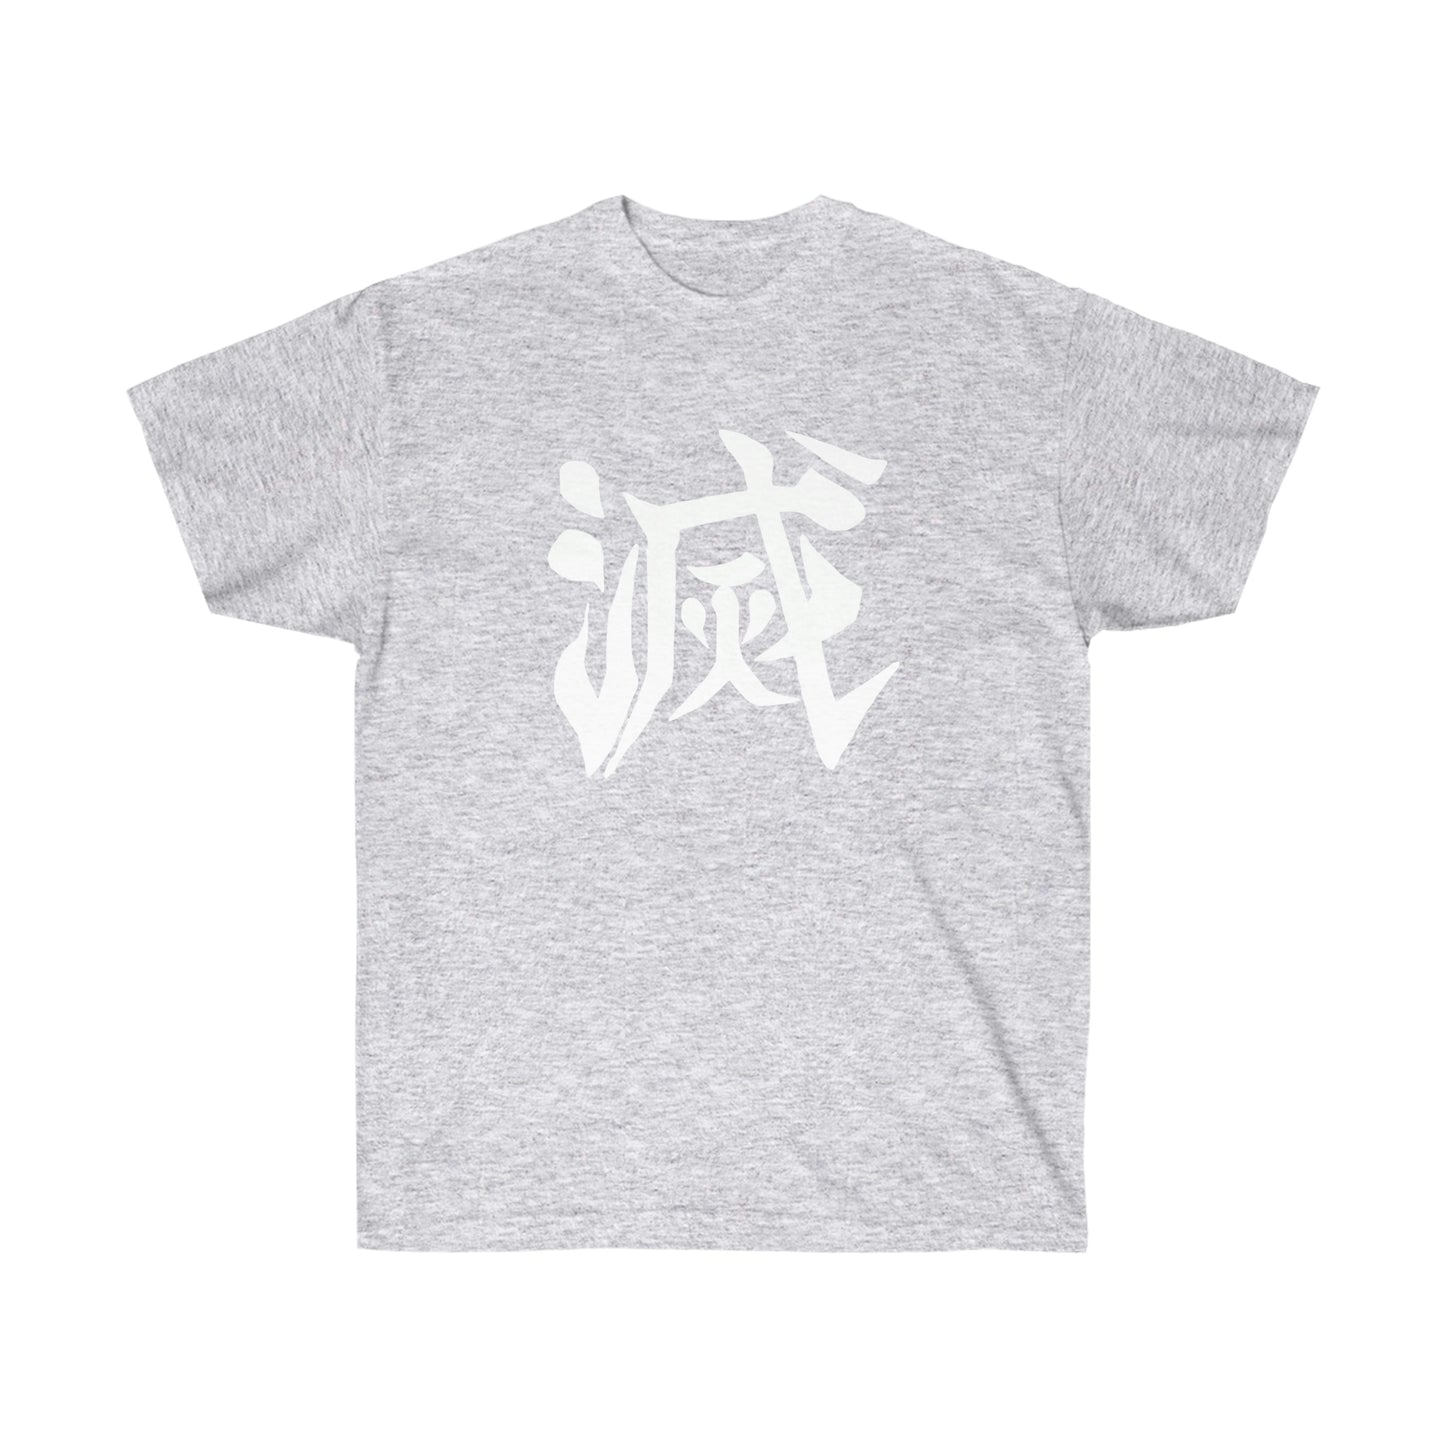 Demon Slay Corps shirt in kanji t-shirt